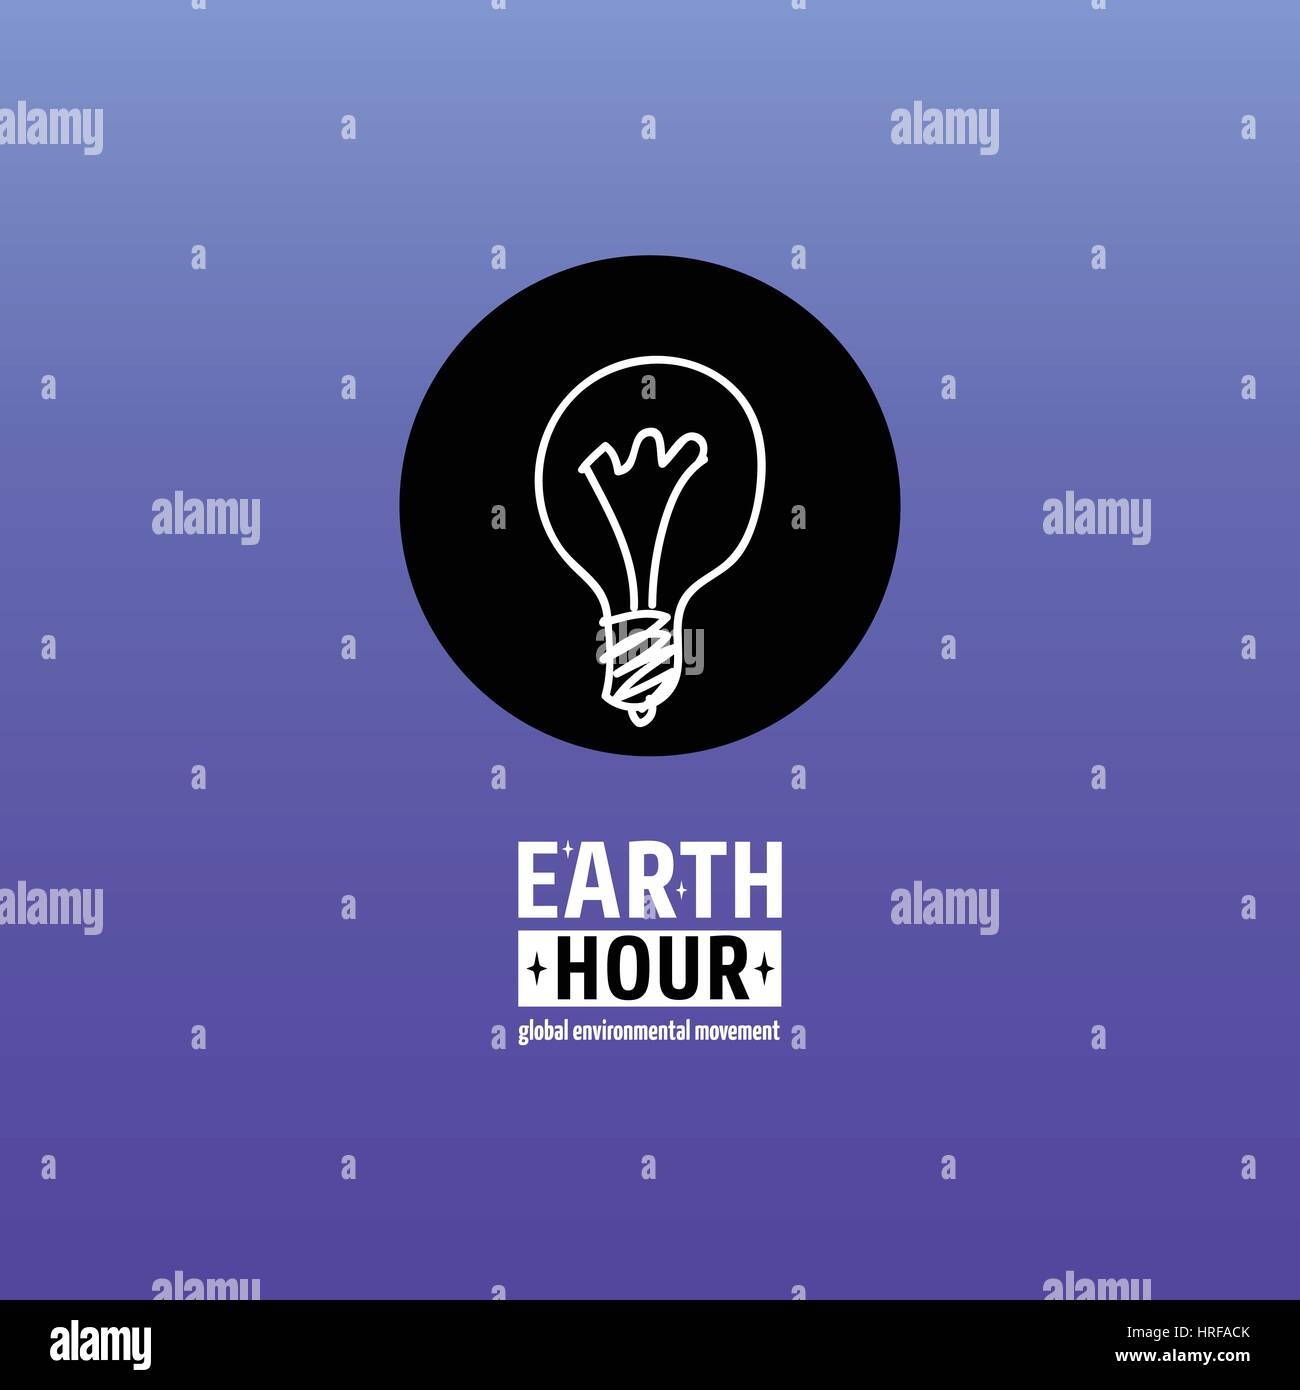 Earth Hour ist eine globale Umweltbewegung. Vektor-Symbol mit Text. Konzept der Energieeinsparung und Klimawandel aufzuhalten. Glühbirne Lampe auf da ausgeschaltet Stock Vektor